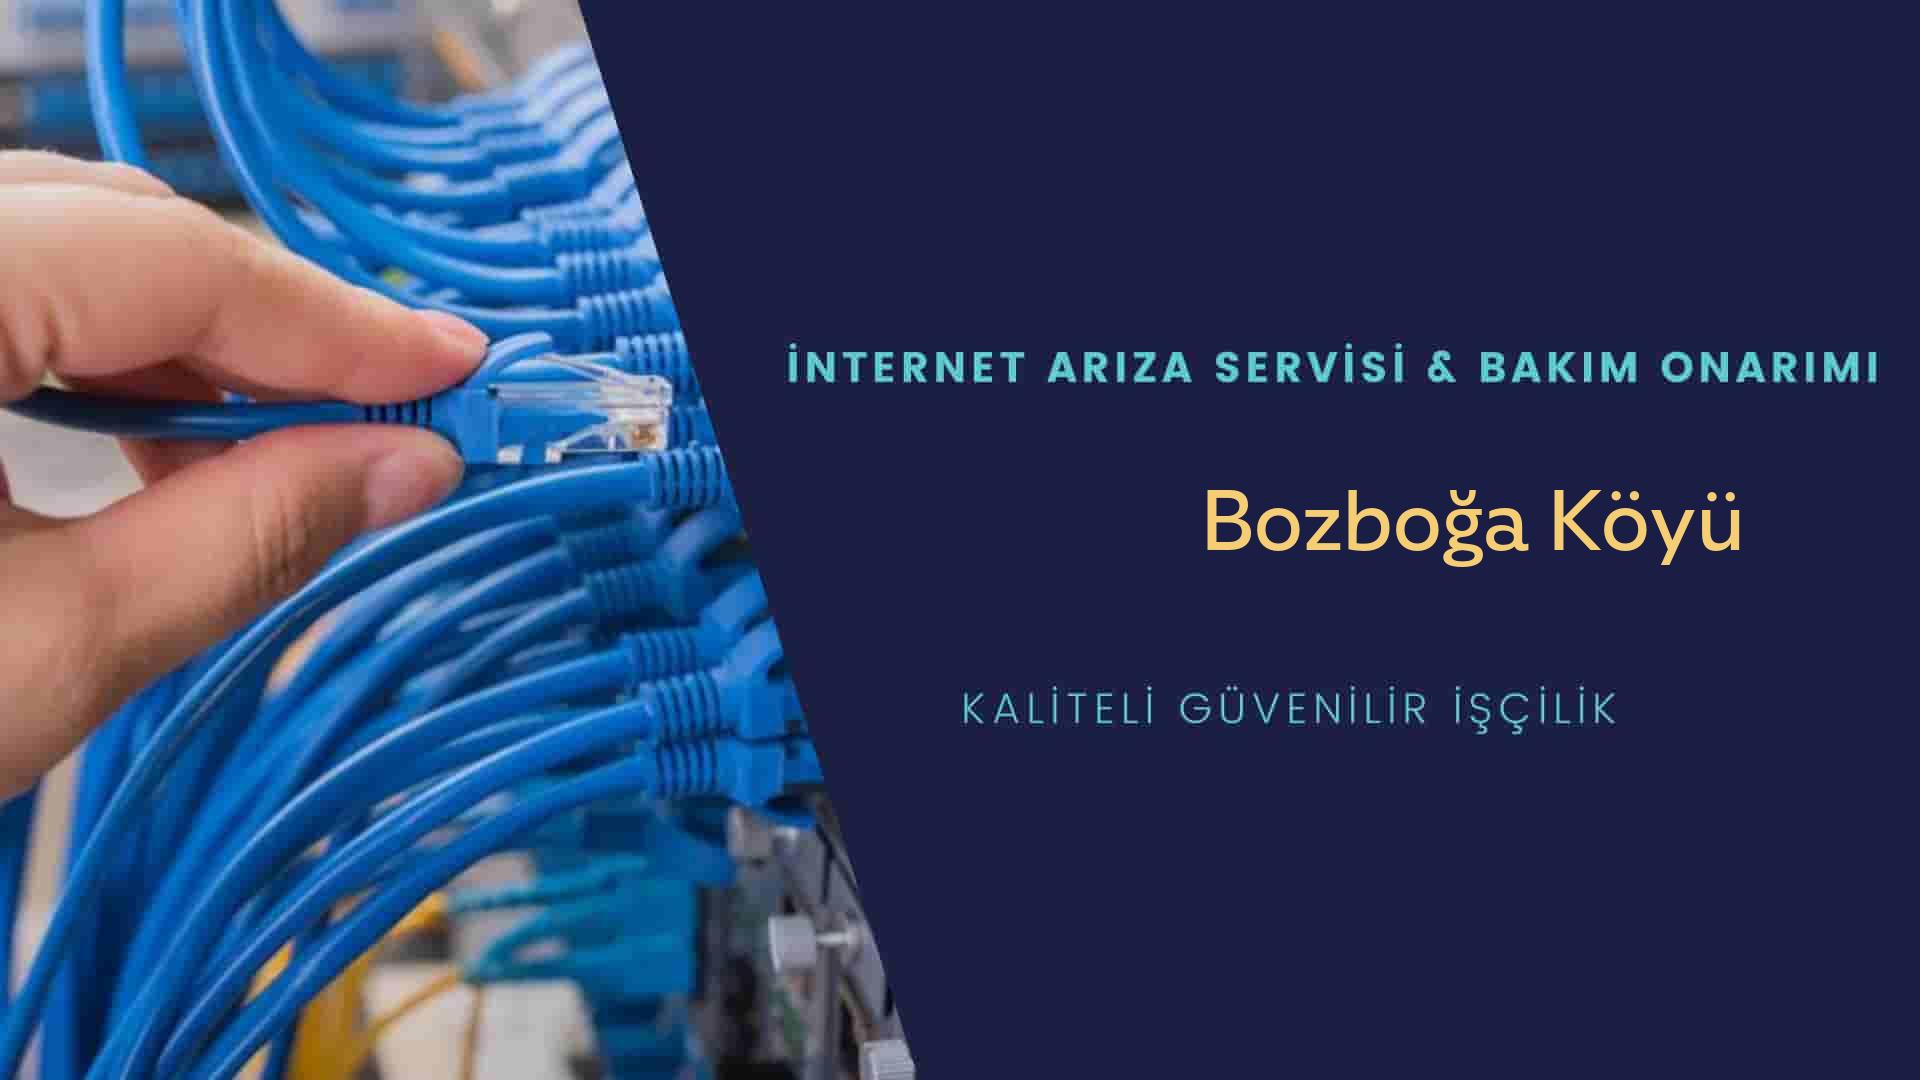 Bozboğa Köyü internet kablosu çekimi yapan yerler veya elektrikçiler mi? arıyorsunuz doğru yerdesiniz o zaman sizlere 7/24 yardımcı olacak profesyonel ustalarımız bir telefon kadar yakındır size.